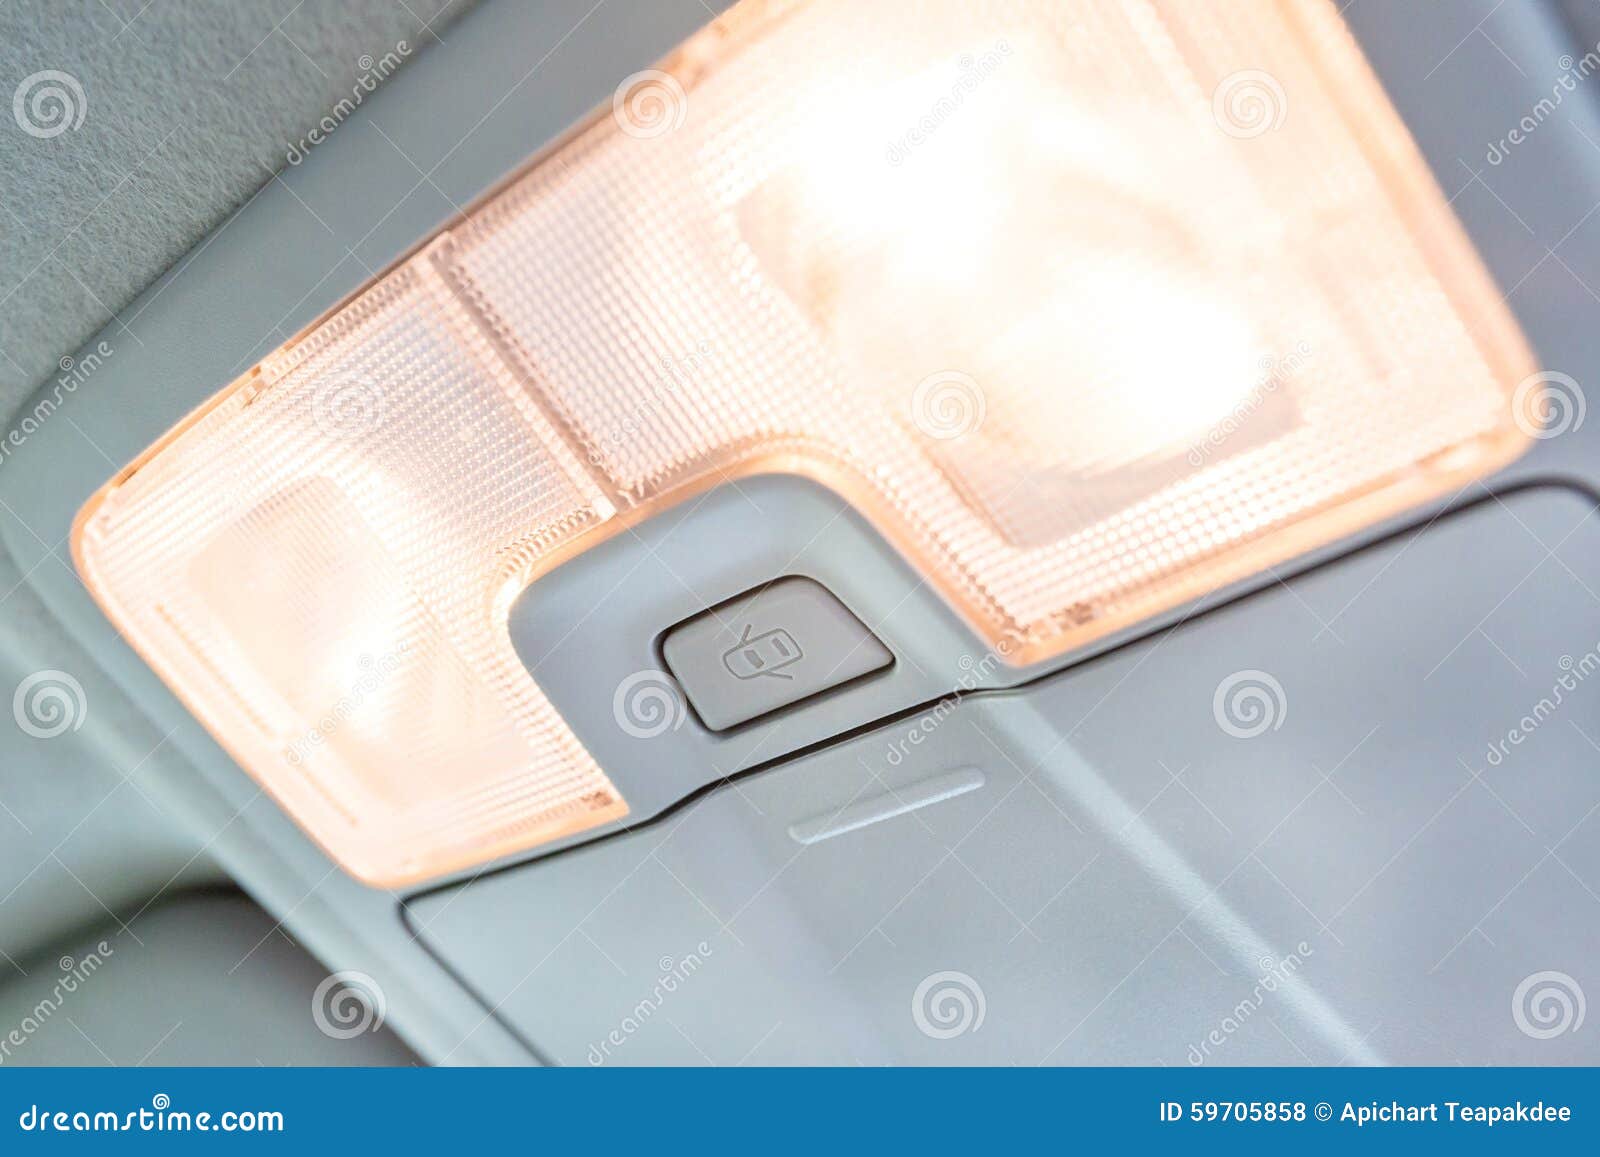 Luz interior en coche foto de archivo. Imagen de moderno - 59705858